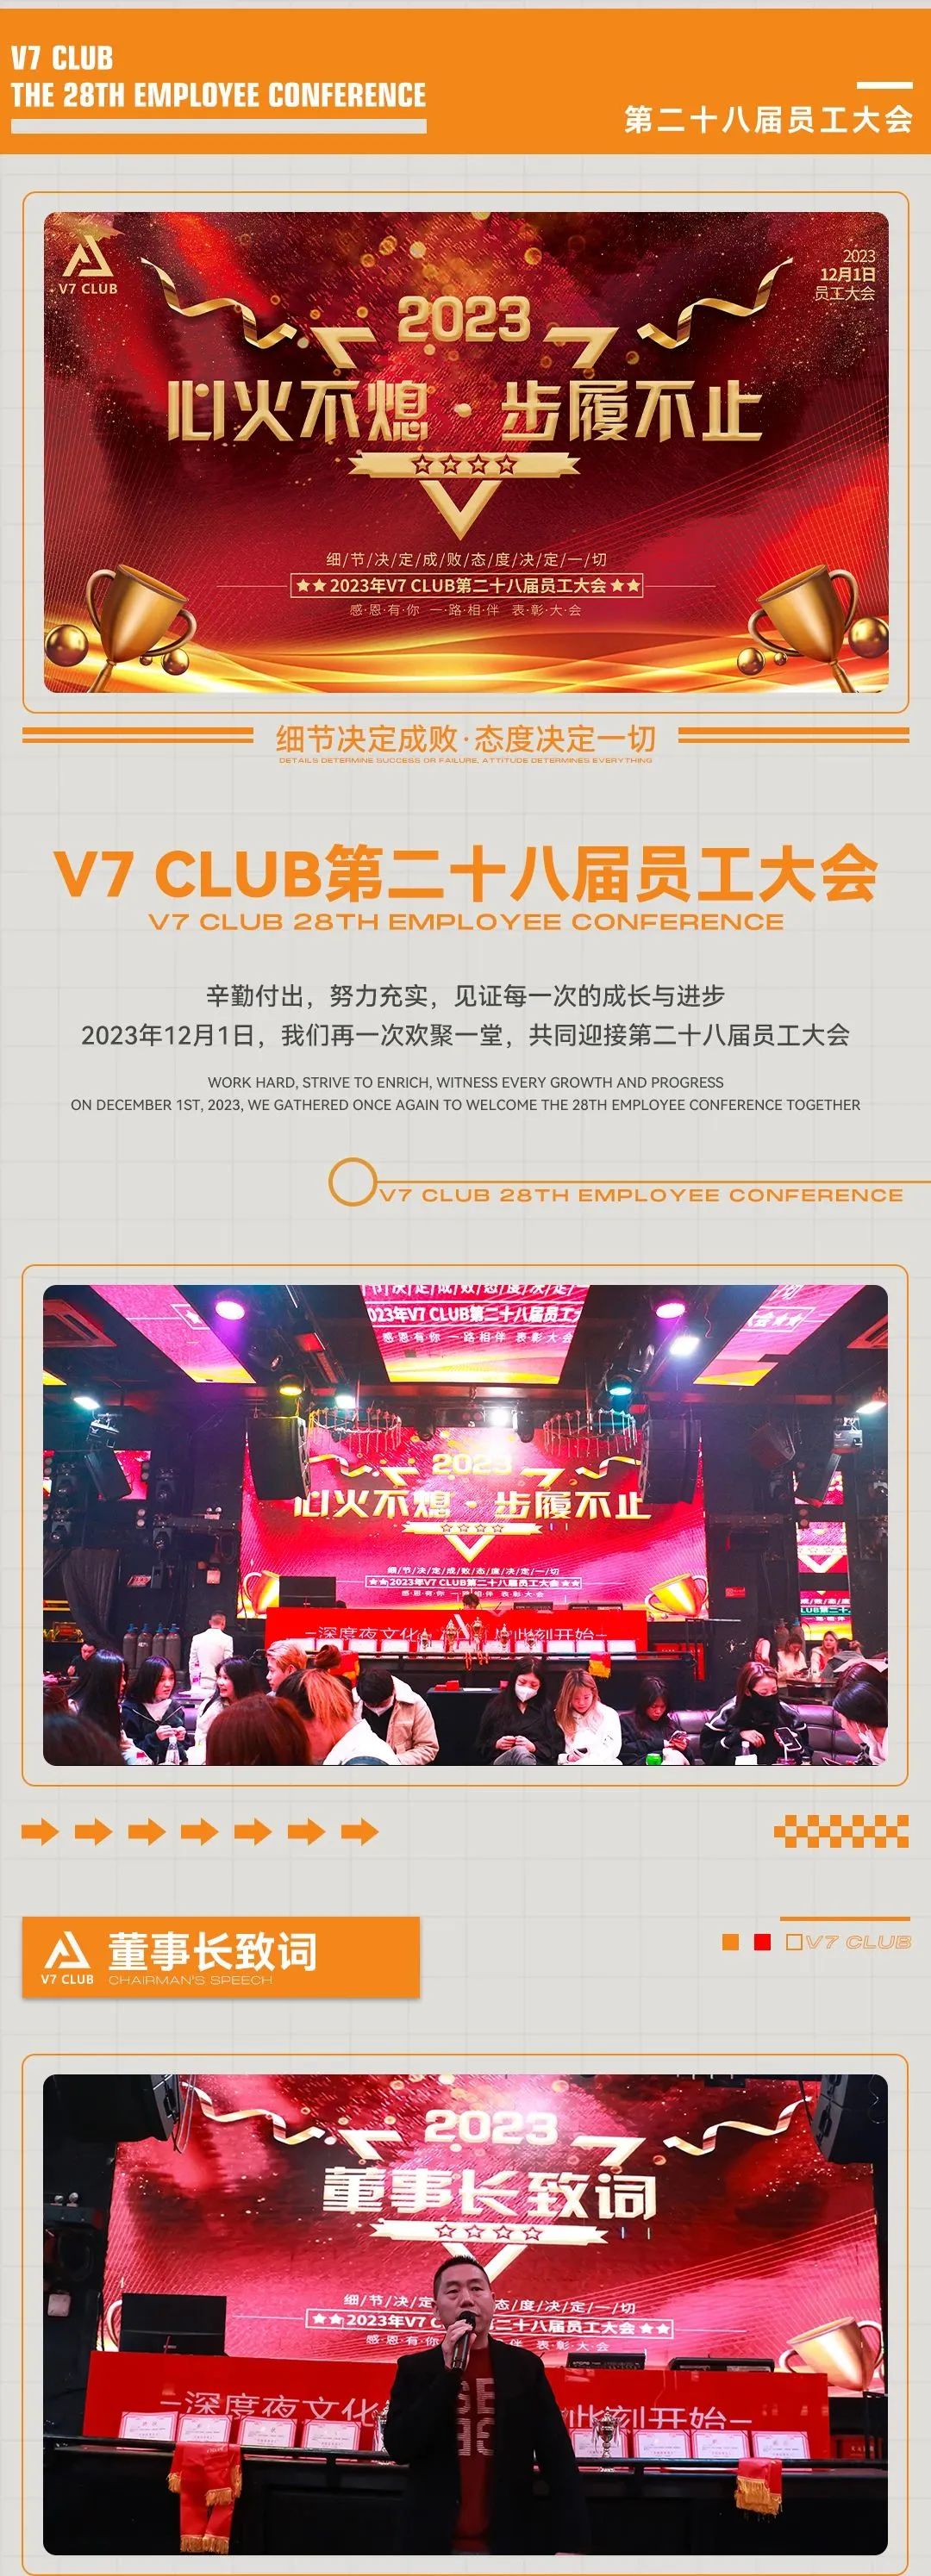 [心火不熄·步履不止] V7 CLUB第28届员工大会圆满落幕-昆明V7 CLUB/V7酒吧